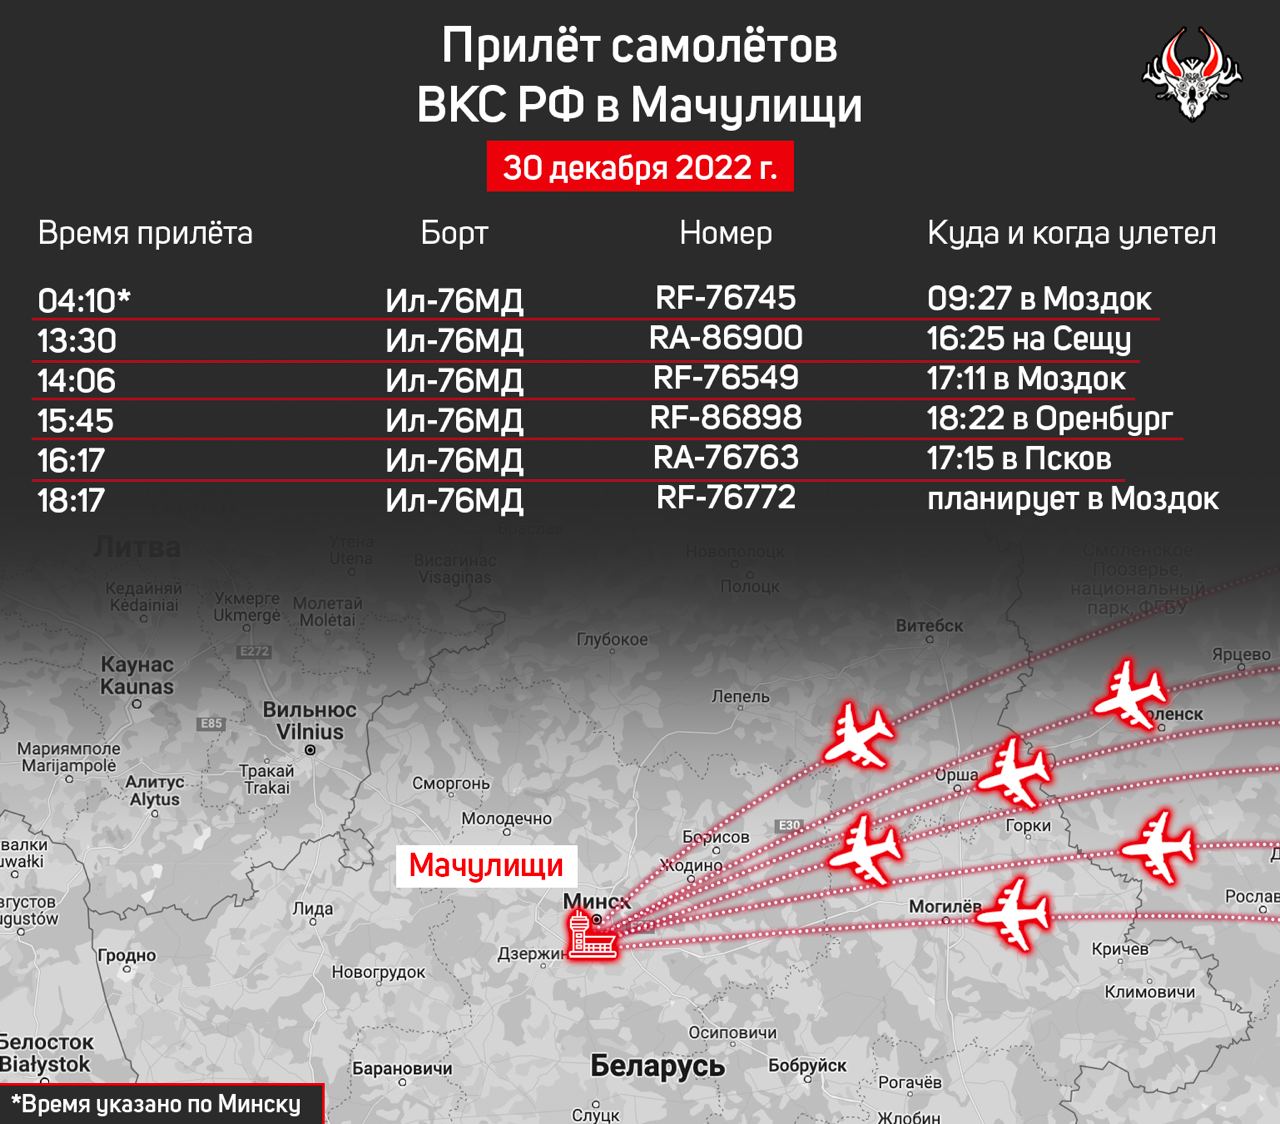 30 декабря в Беларусь прилетели 6 российских военных транспортников – «Беларускі Гаюн»